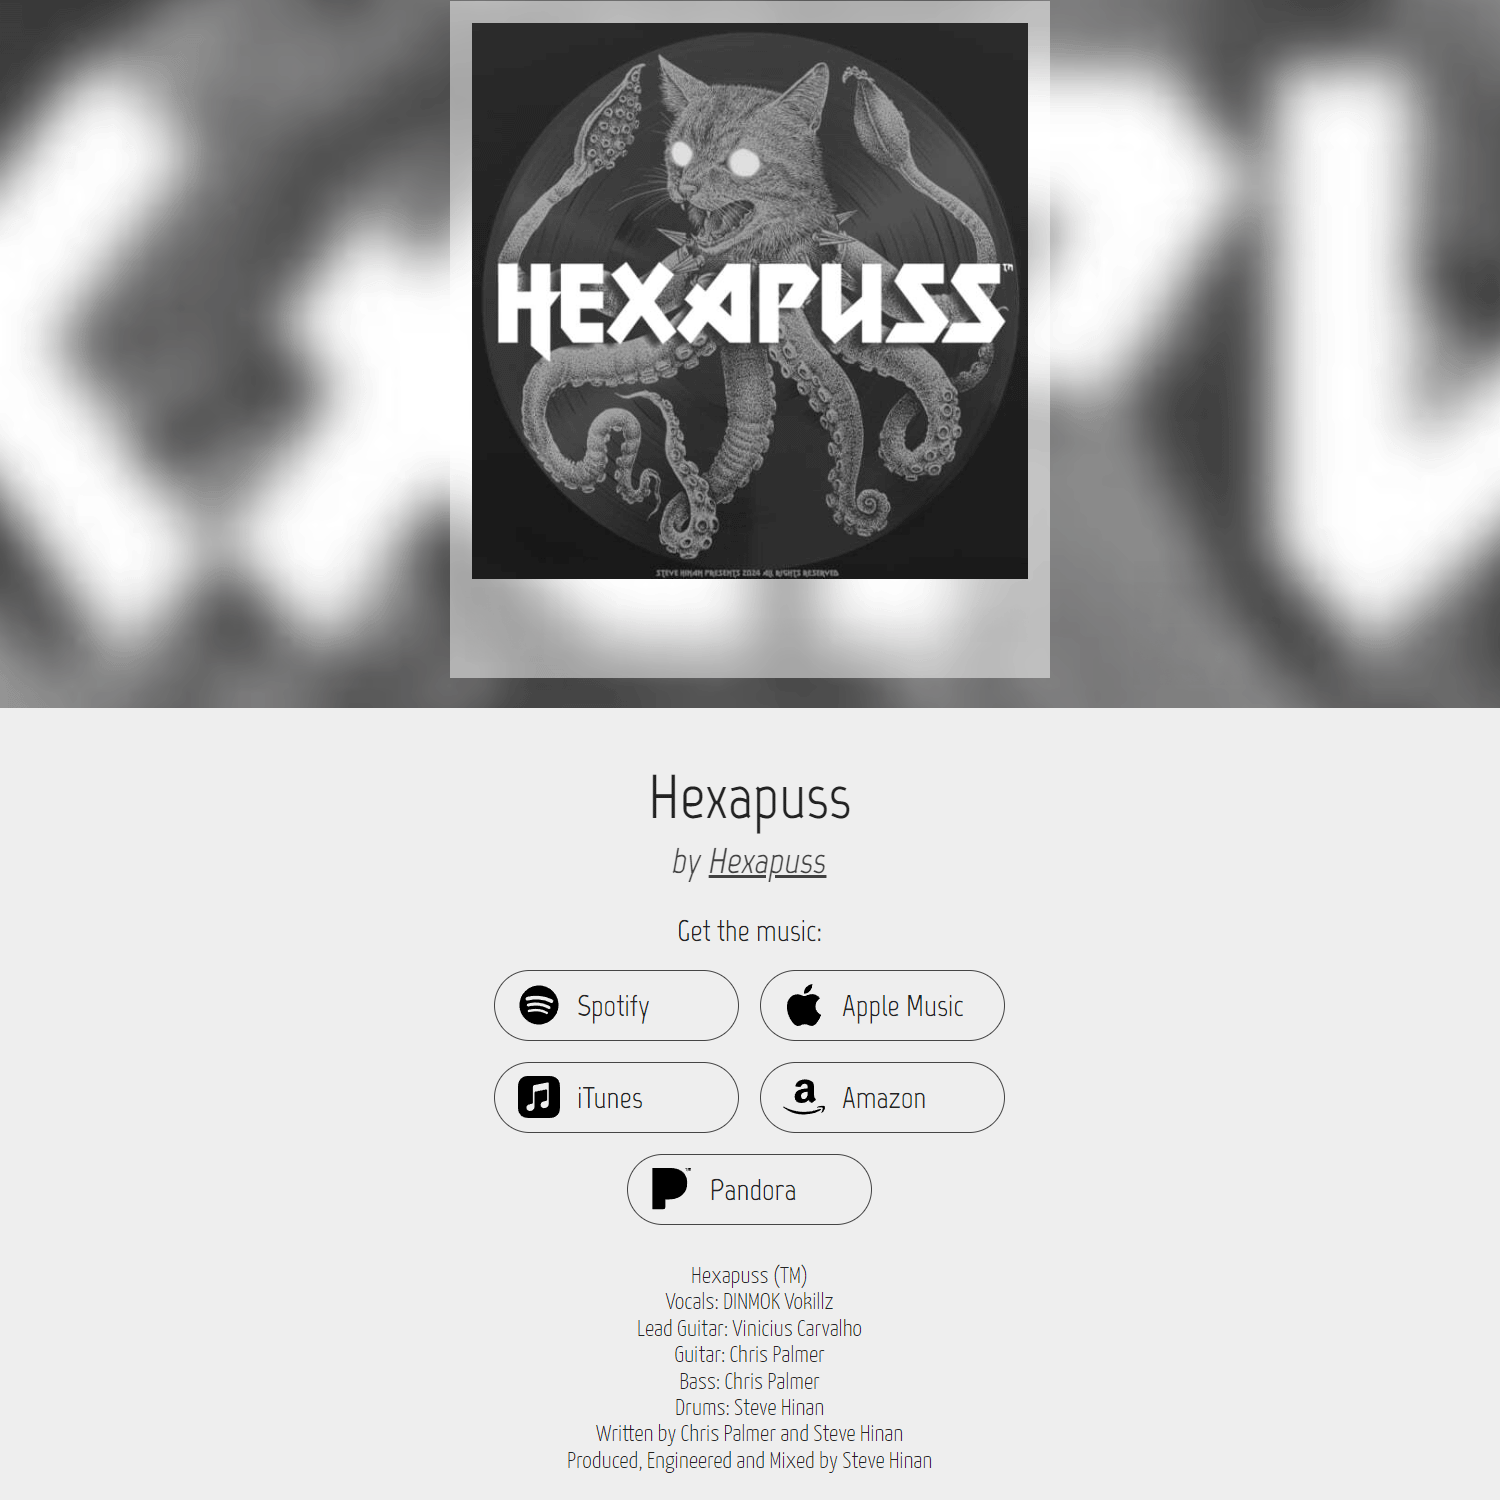 Hexapuss (TM)